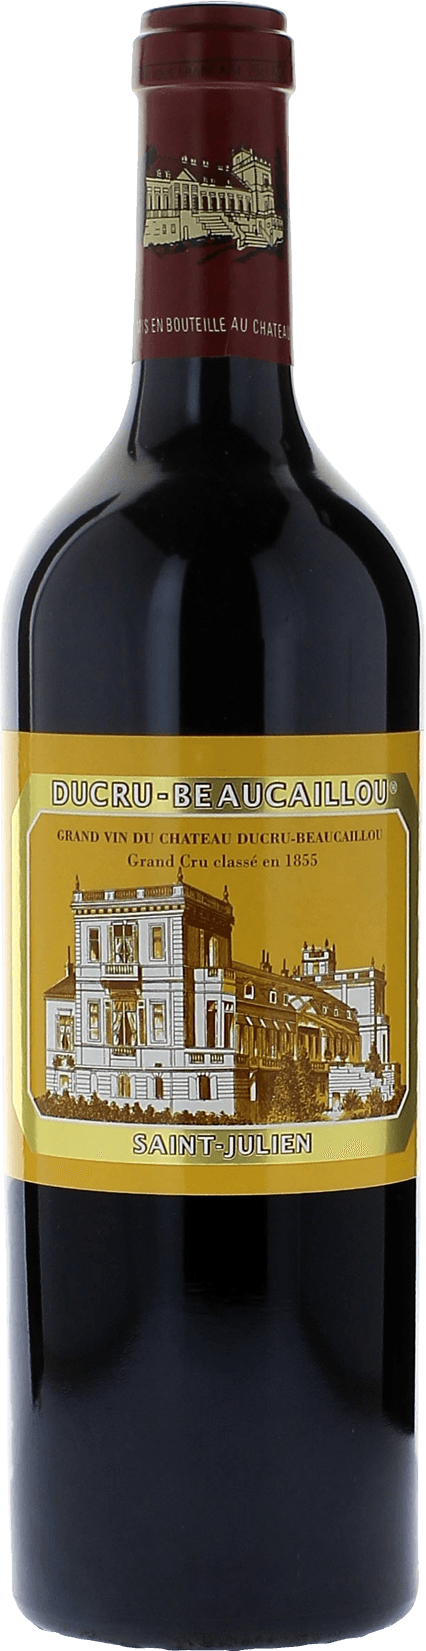 Ducru beaucaillou 1989 2me Grand cru class Saint-Julien, Bordeaux rouge